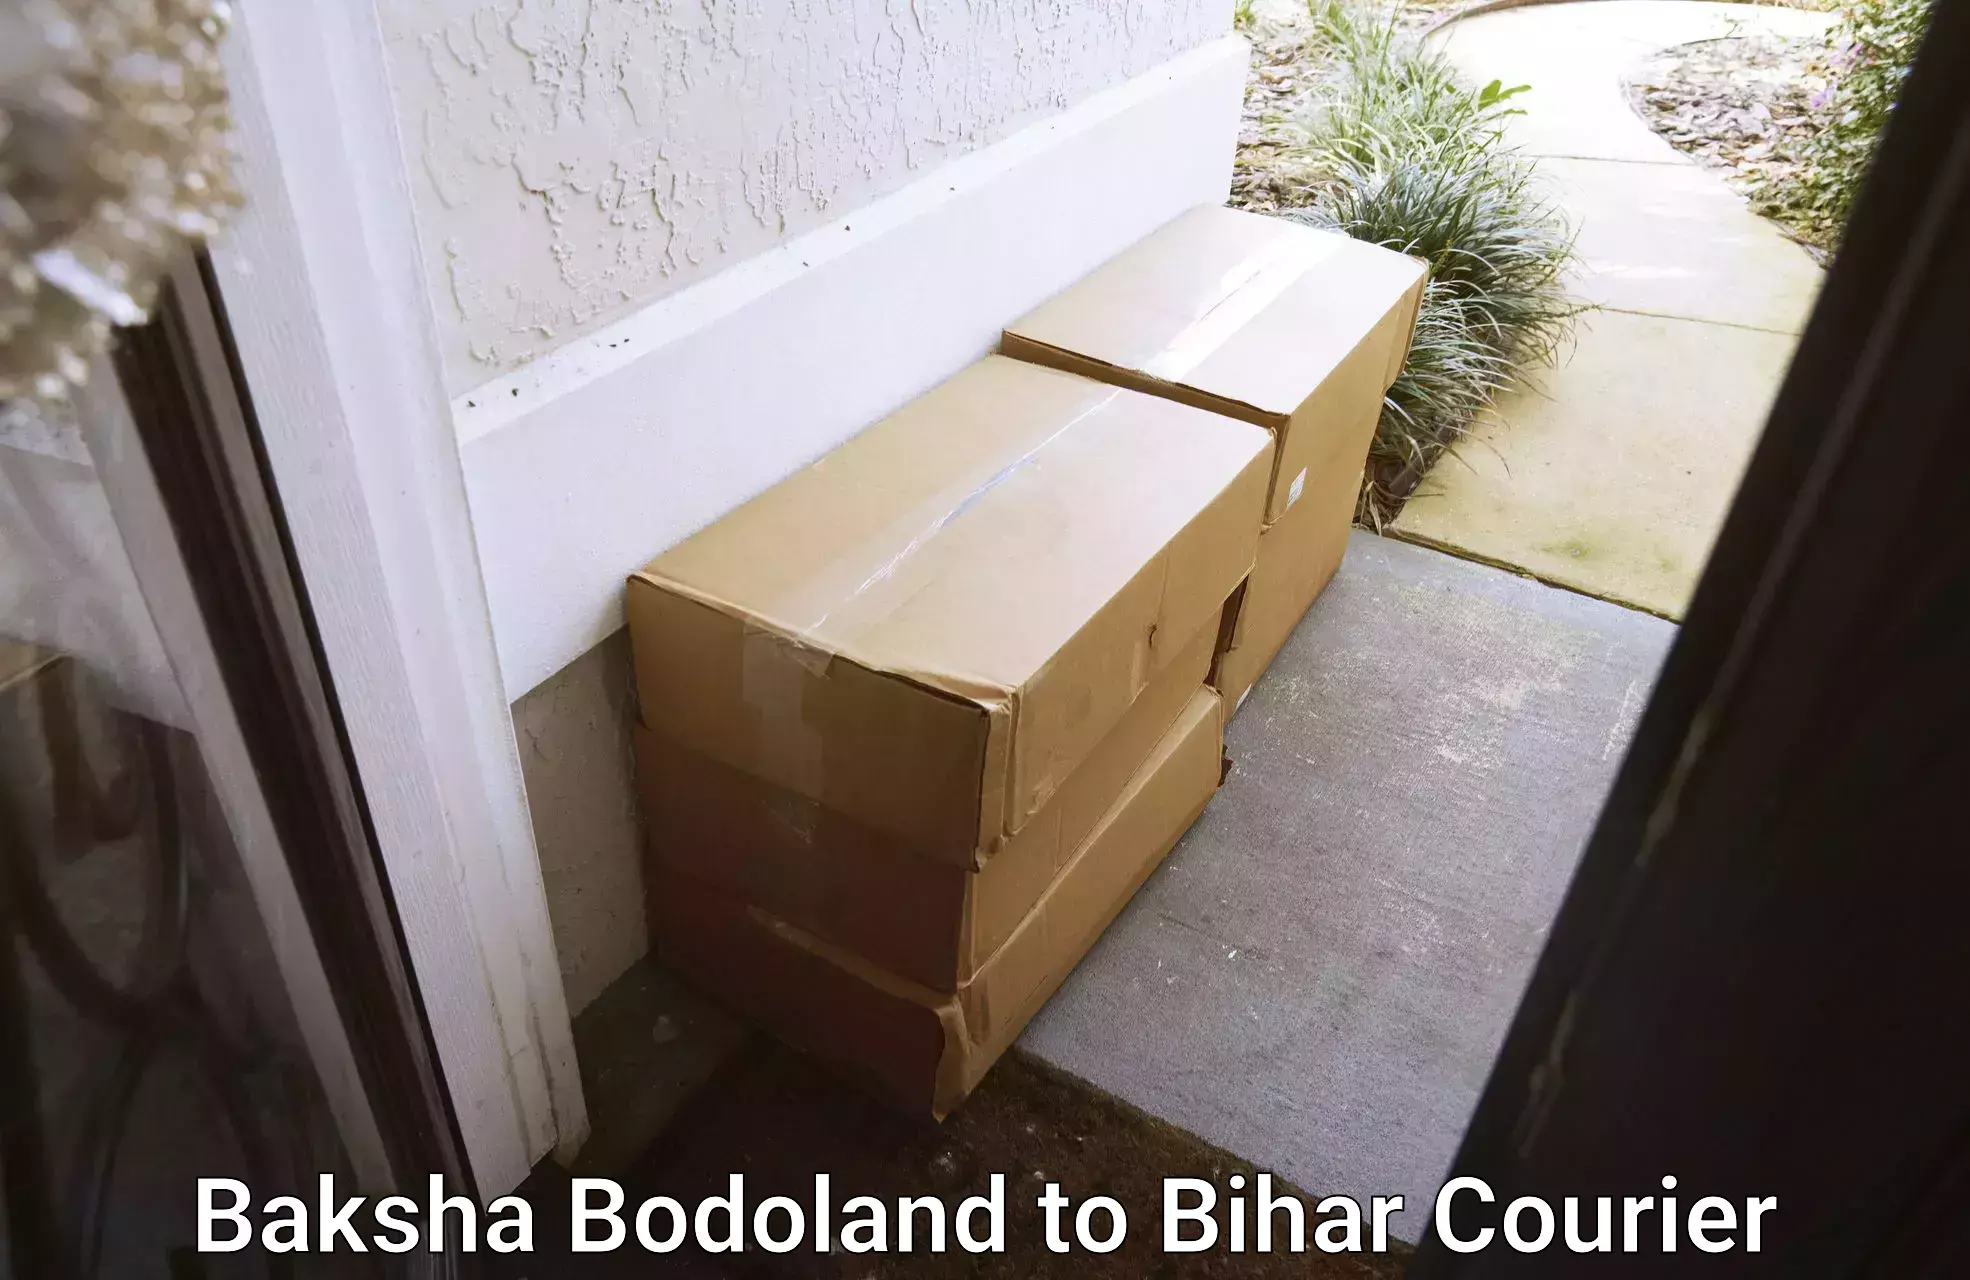 End-to-end delivery Baksha Bodoland to Katihar